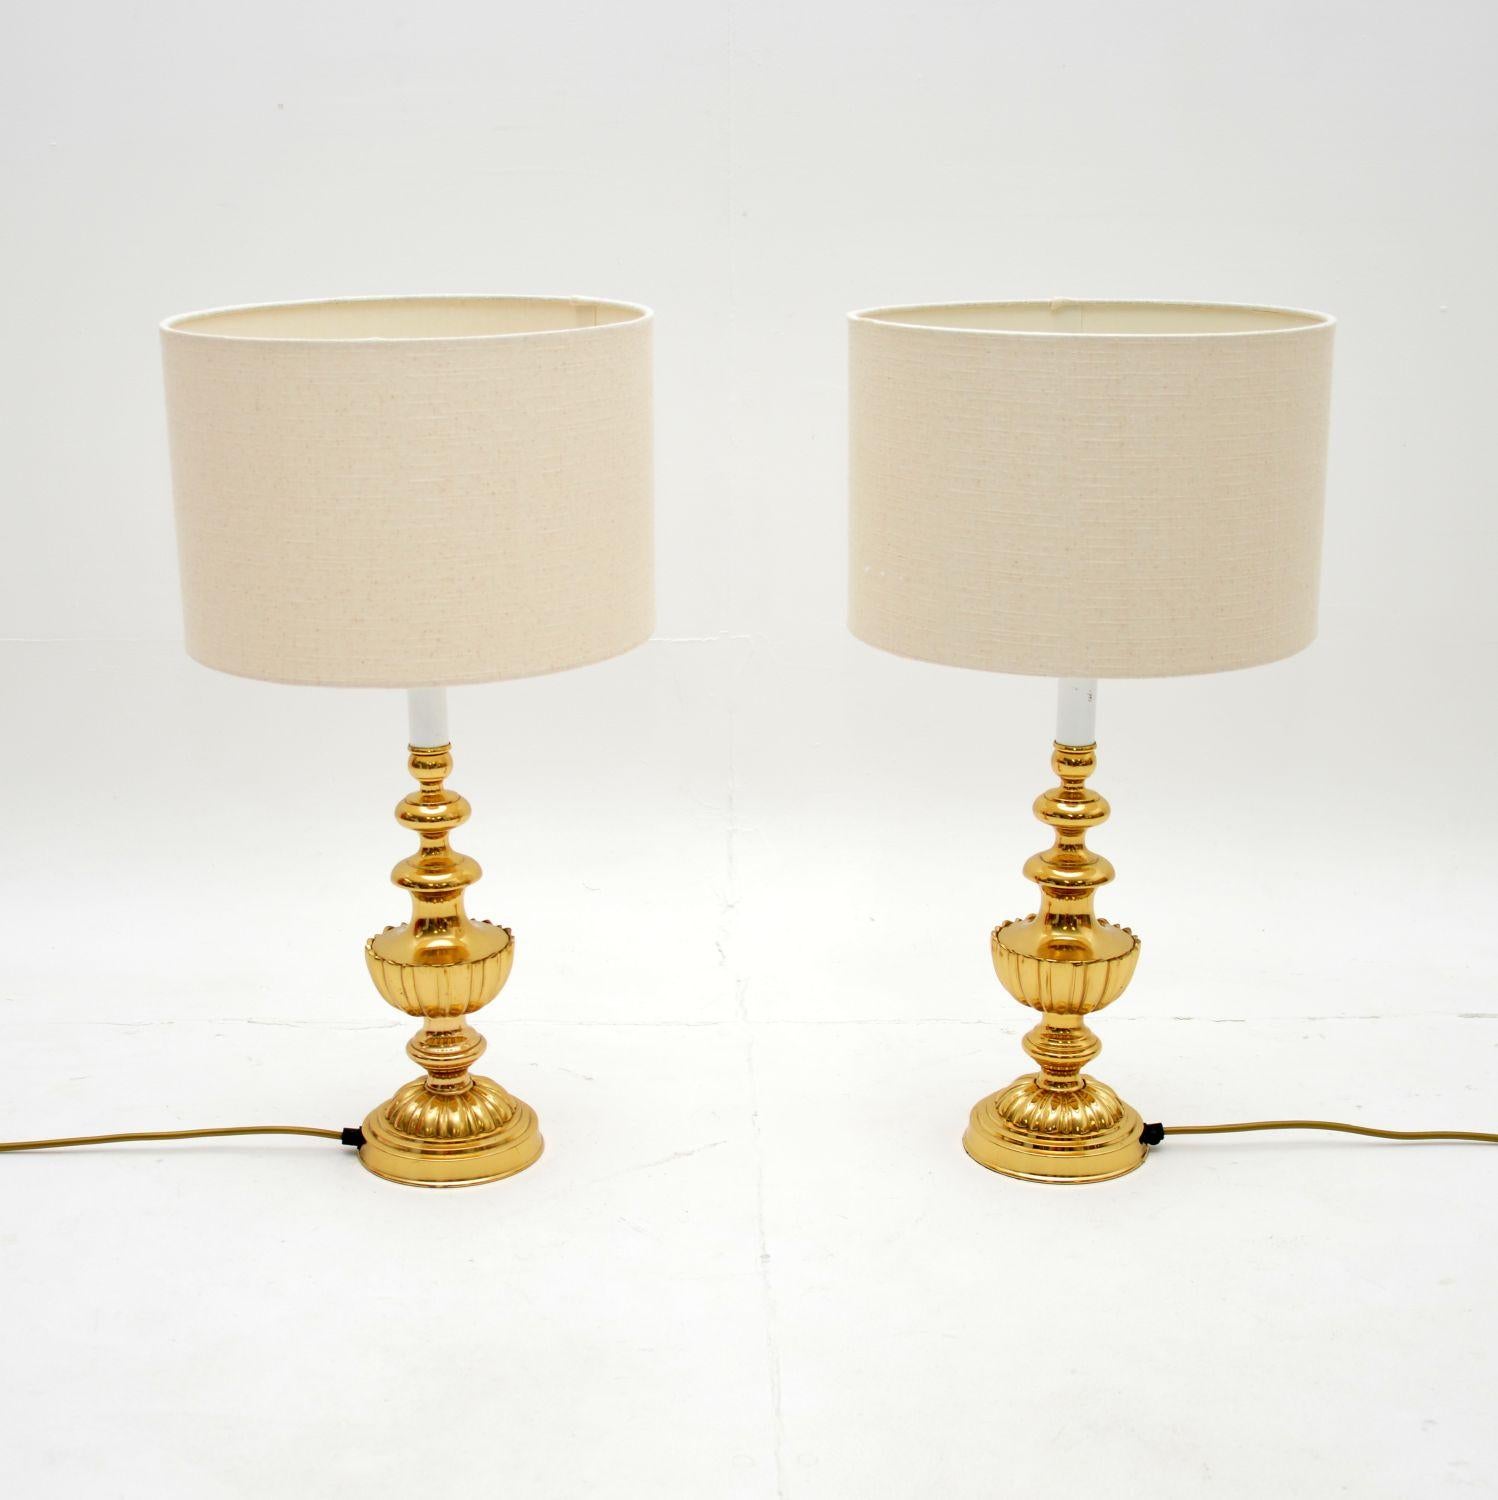 Une fabuleuse et élégante paire de lampes de table vintage en laiton. Fabriqués en Angleterre, ils datent des années 1970.

La qualité est exceptionnelle, ils sont vraiment bien faits et ont une belle taille. Ils sont conçus à la manière de